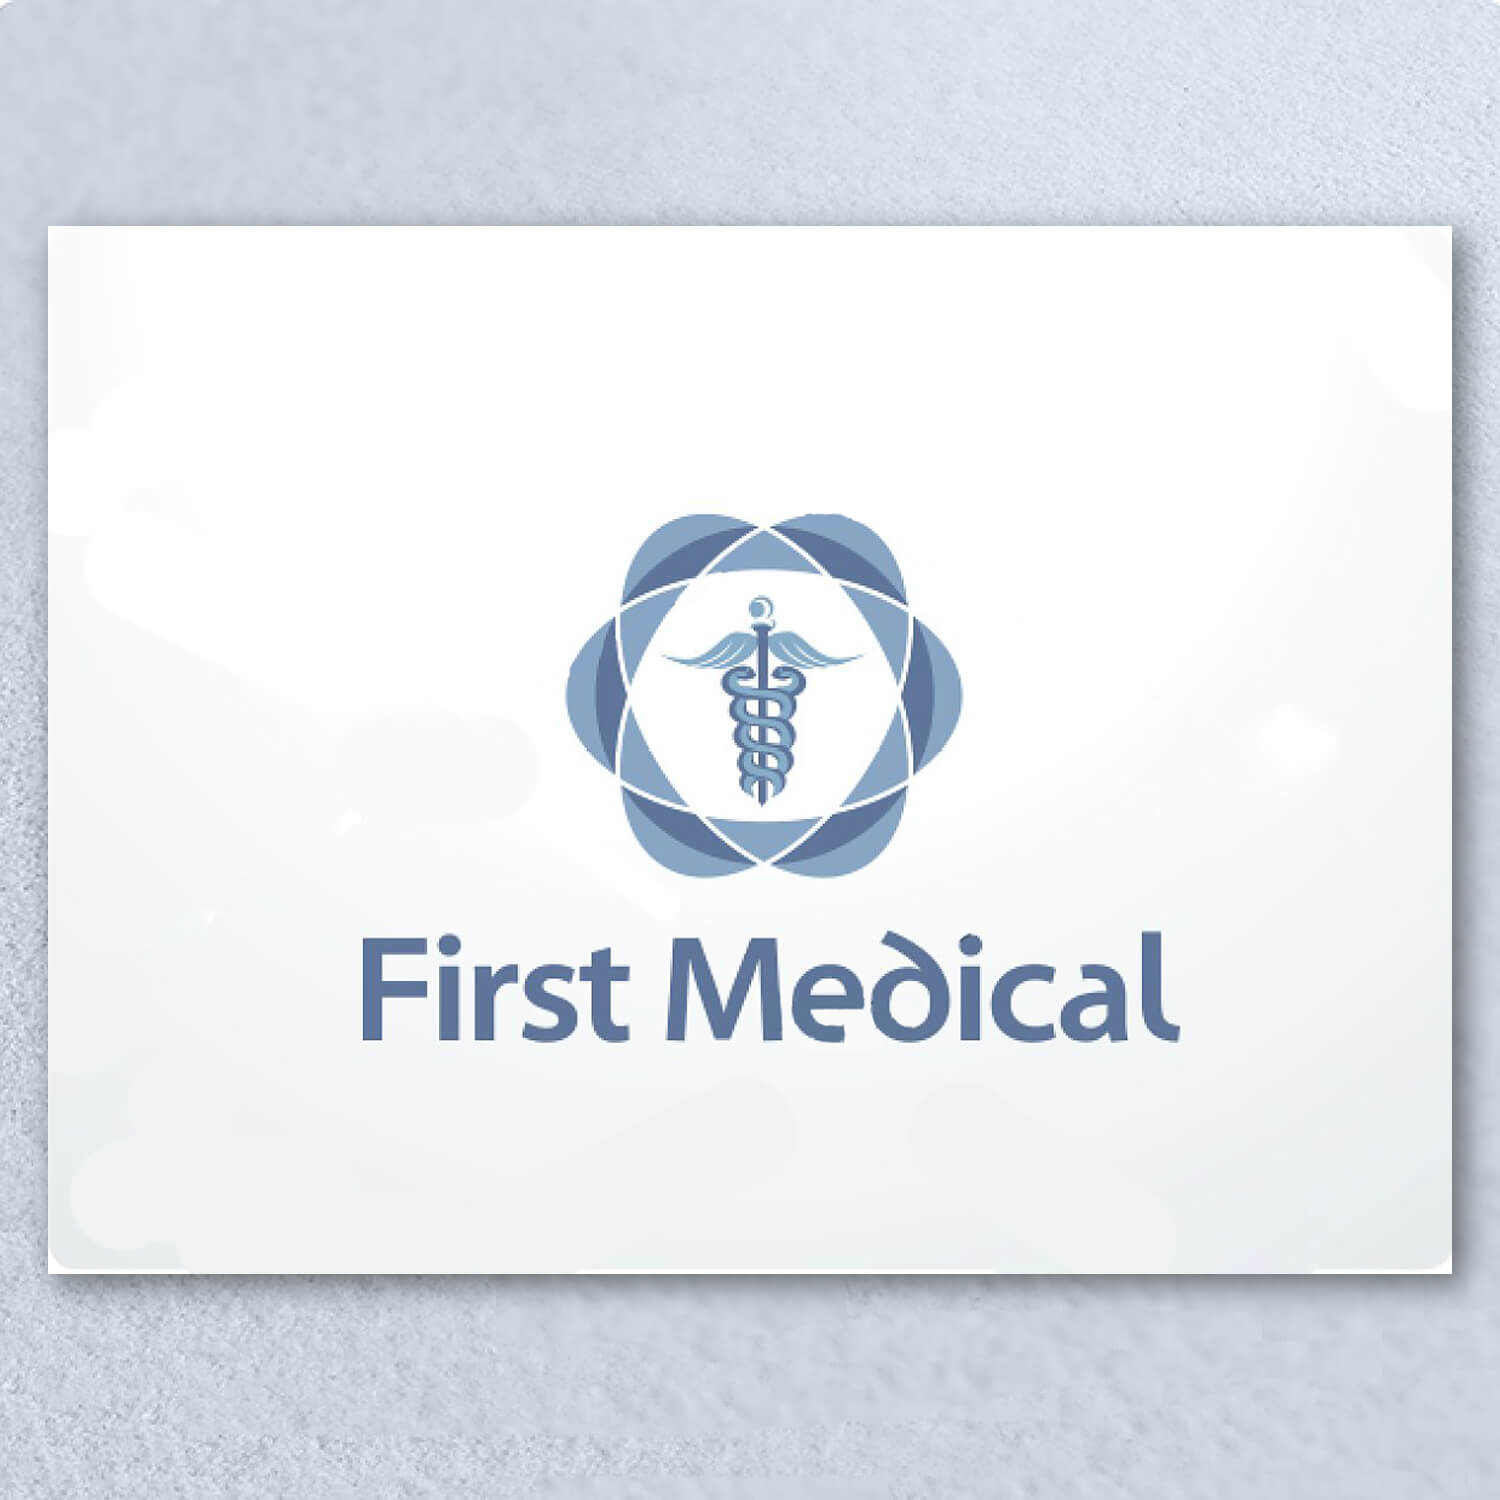 Medical logo design on light colors.